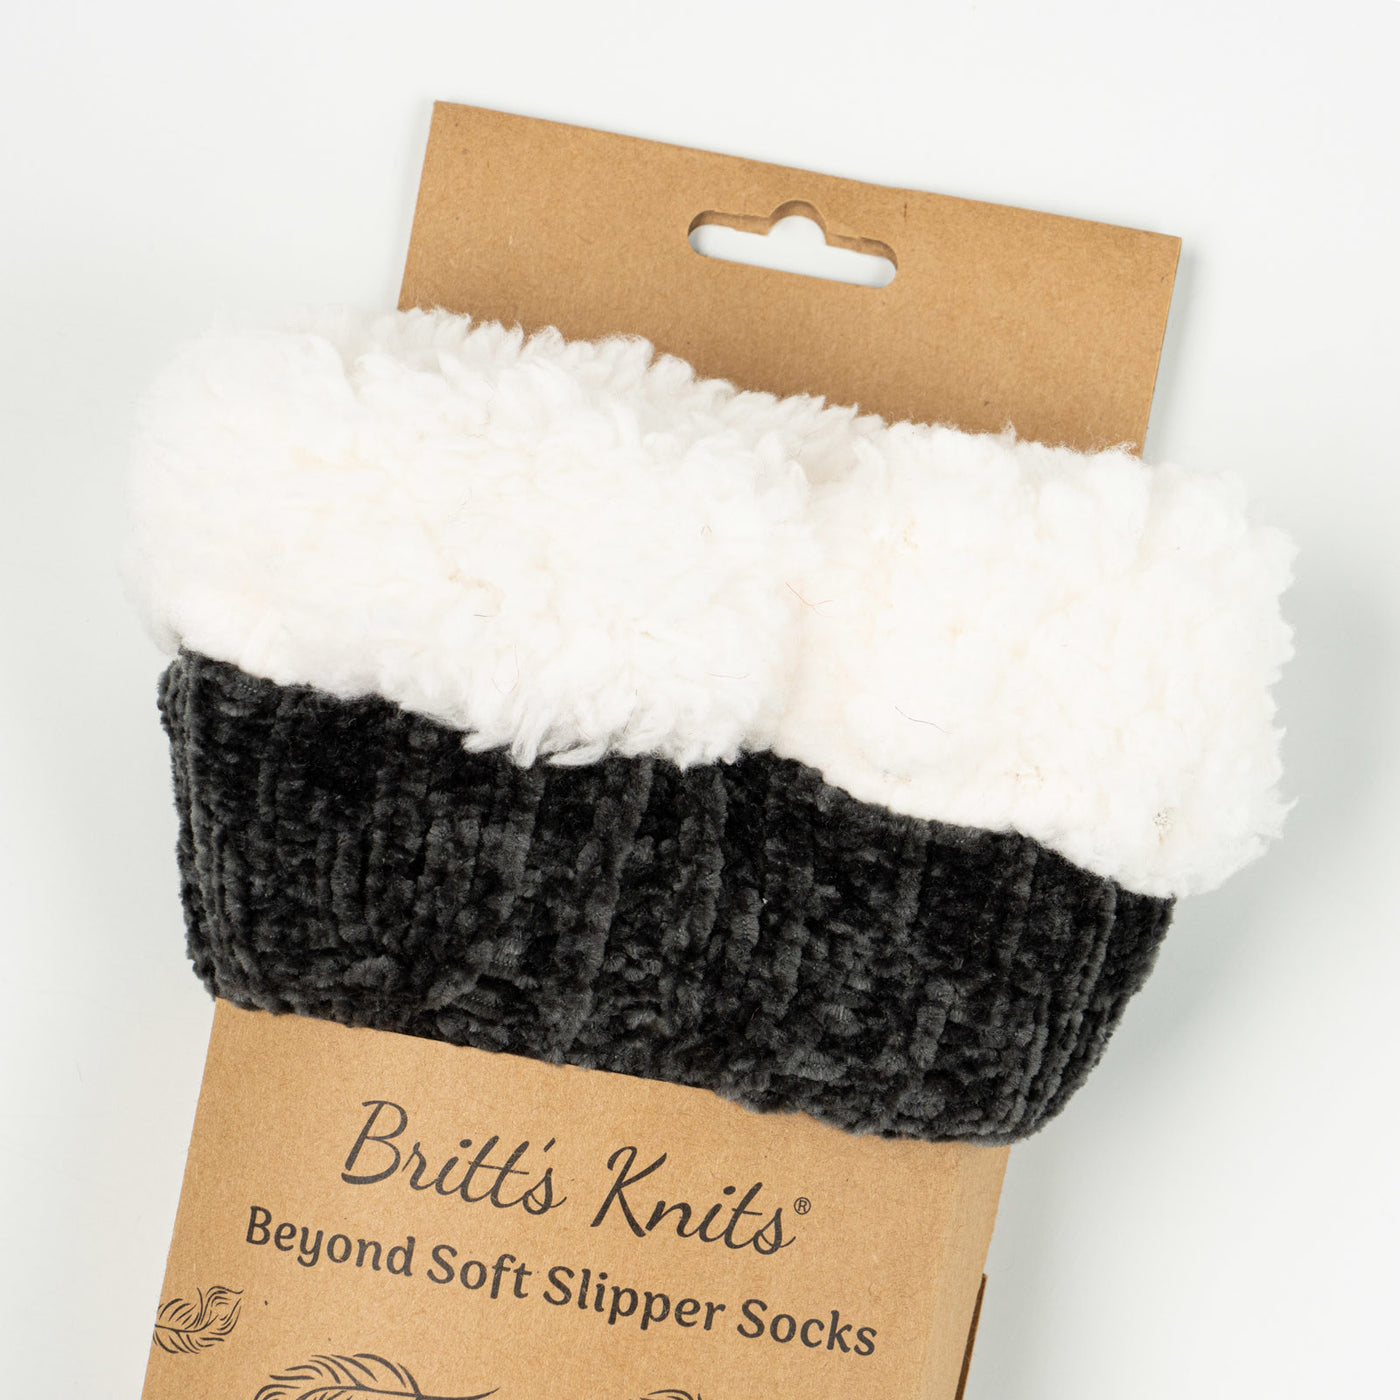 Beyond Soft Slipper Socks